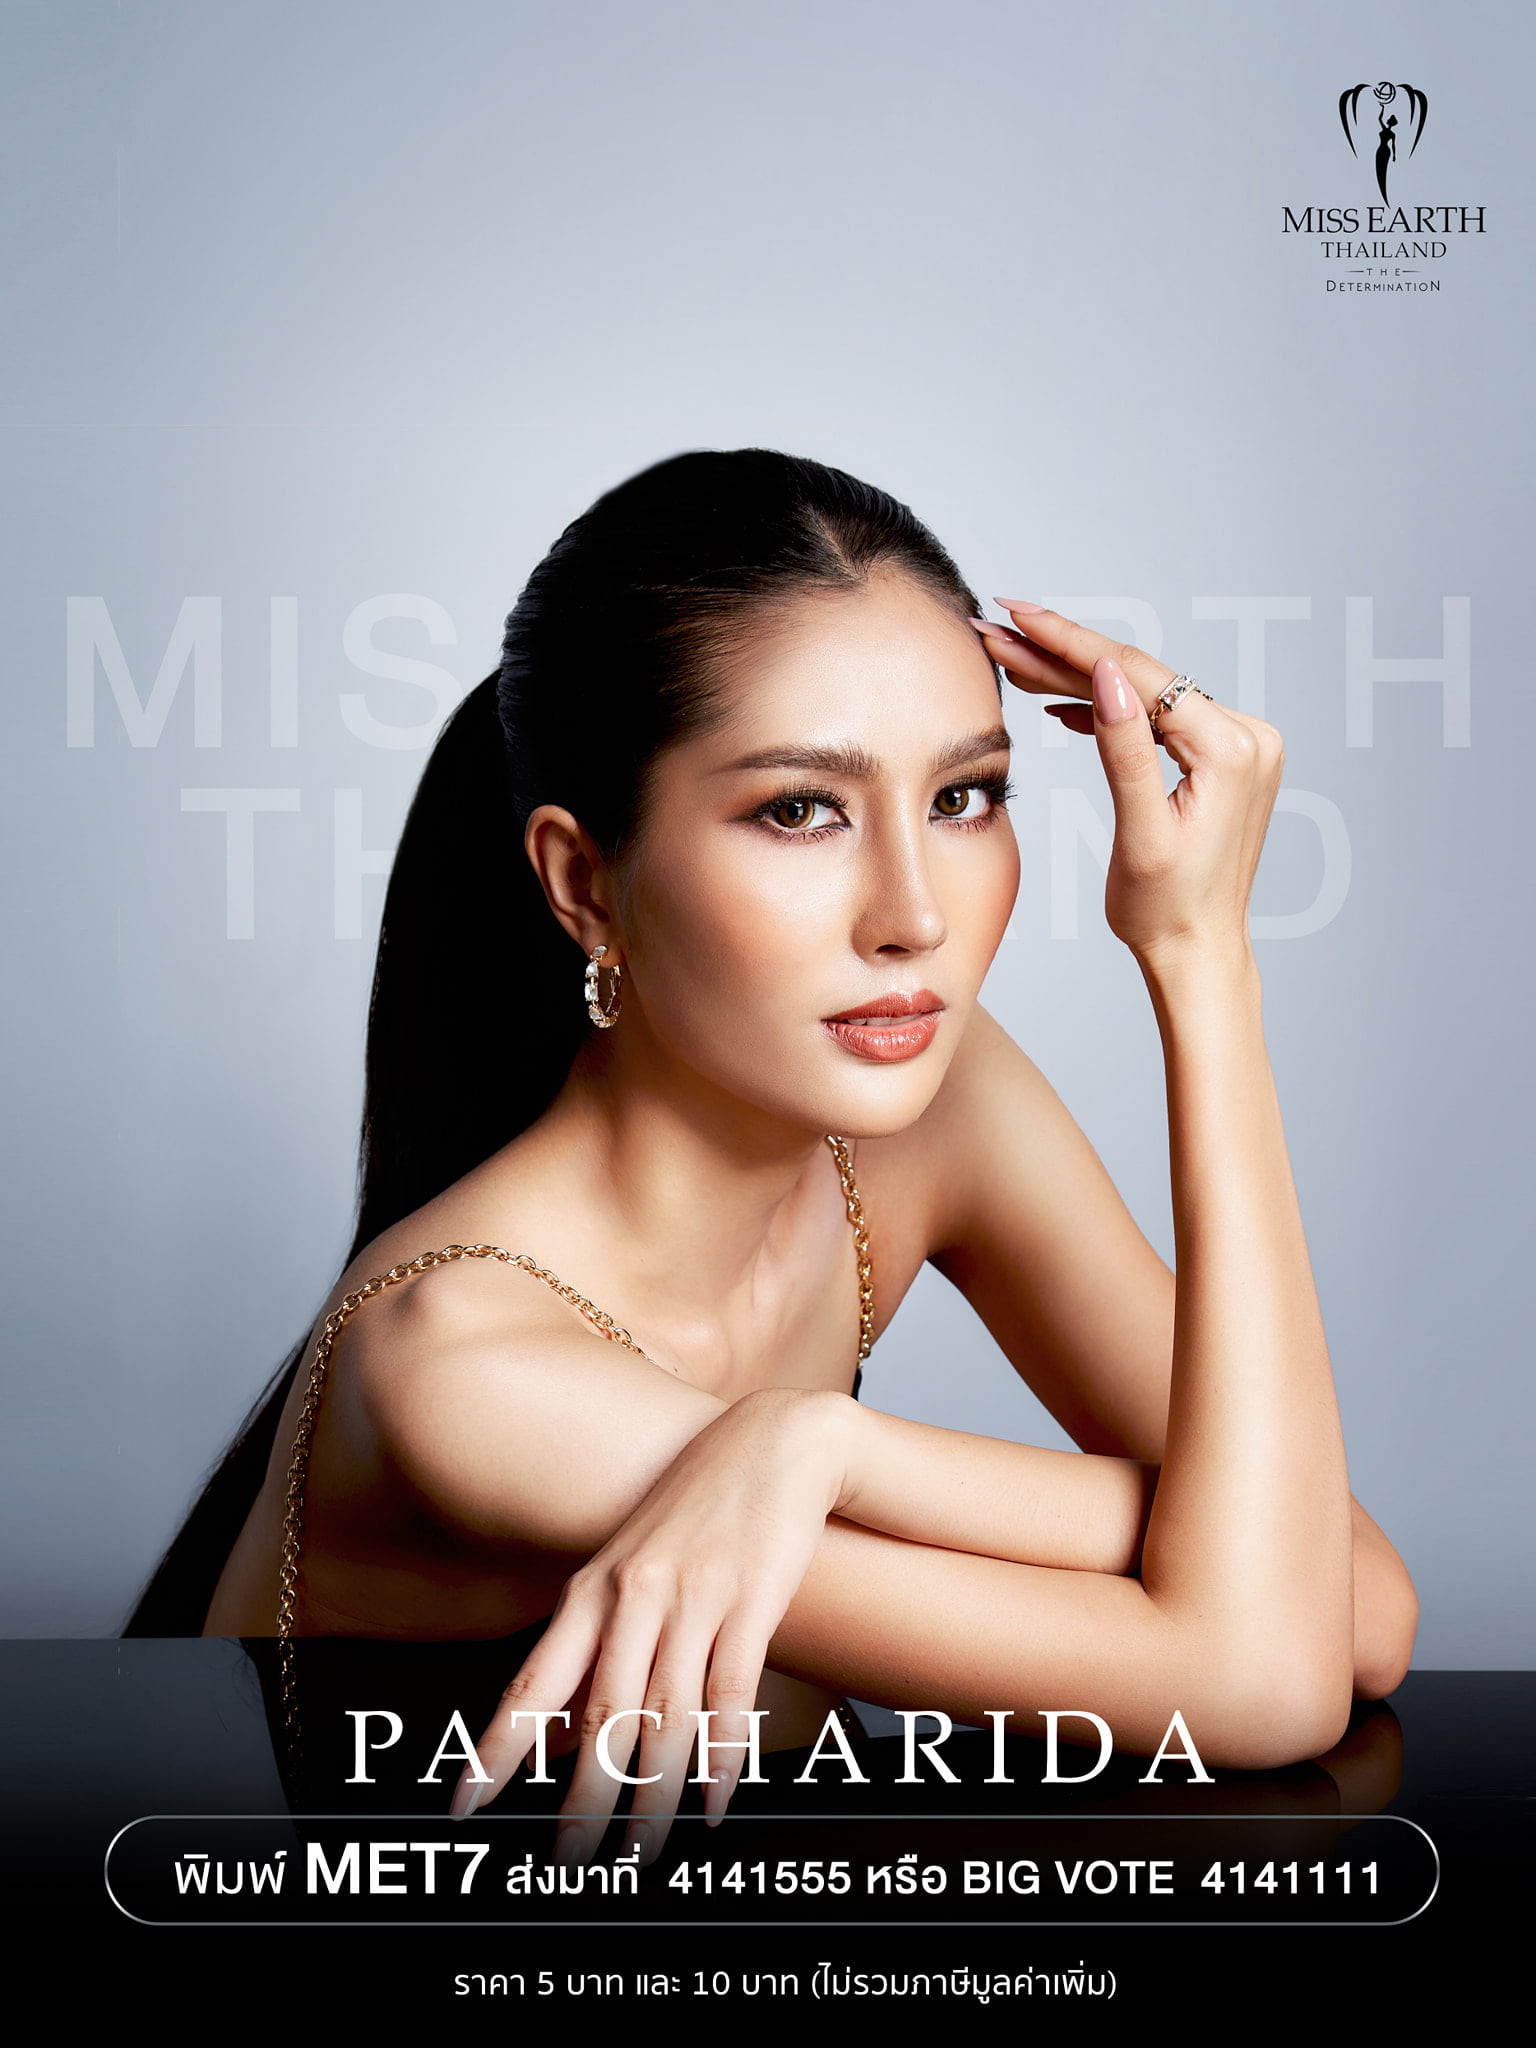 candidatas a miss earth thailand 2021. final: 25 sep. - Página 2 O77RmN